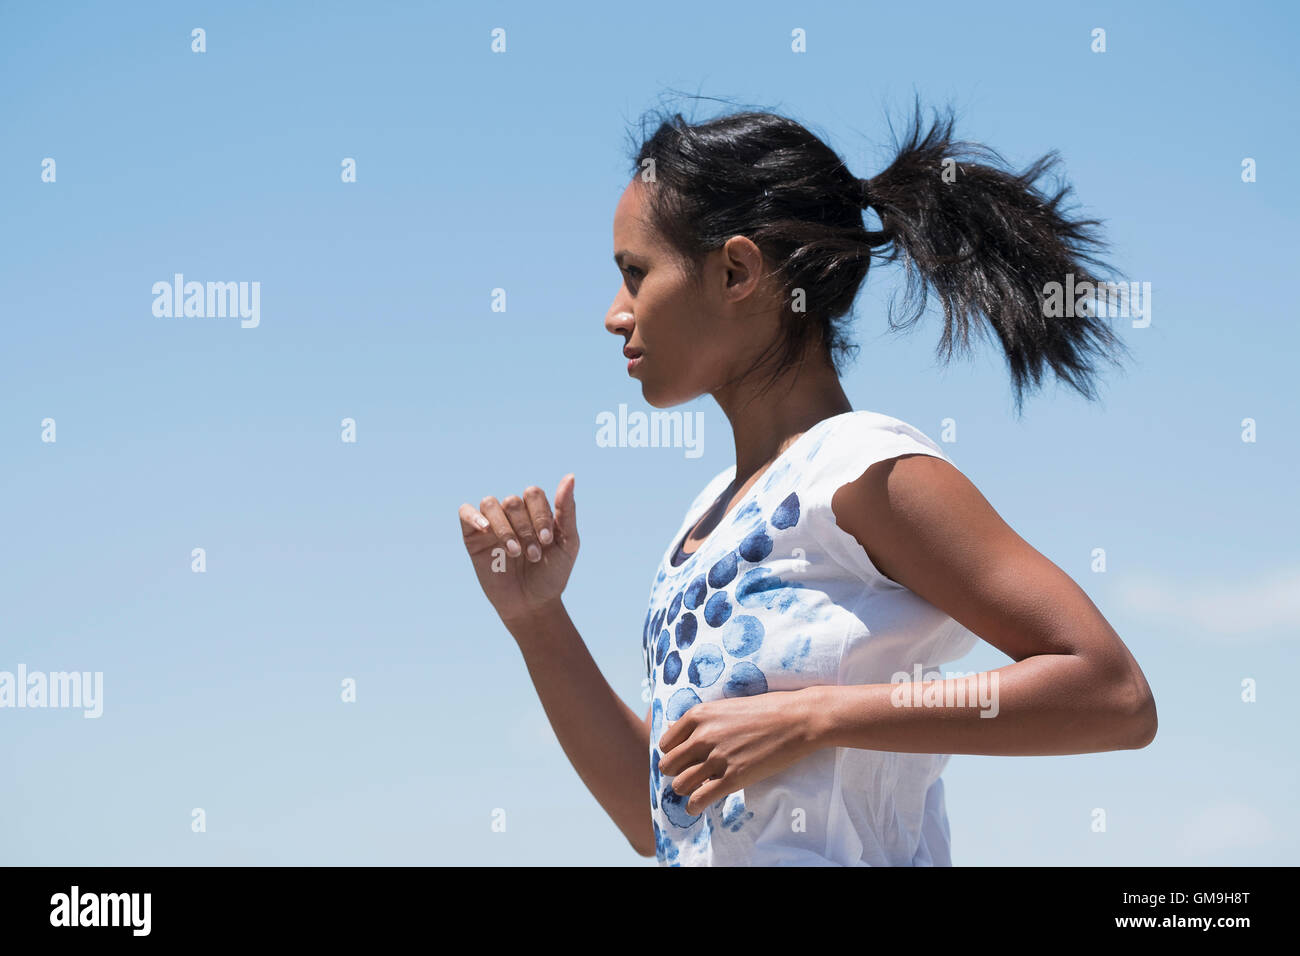 Profil de woman jogging against sky Banque D'Images